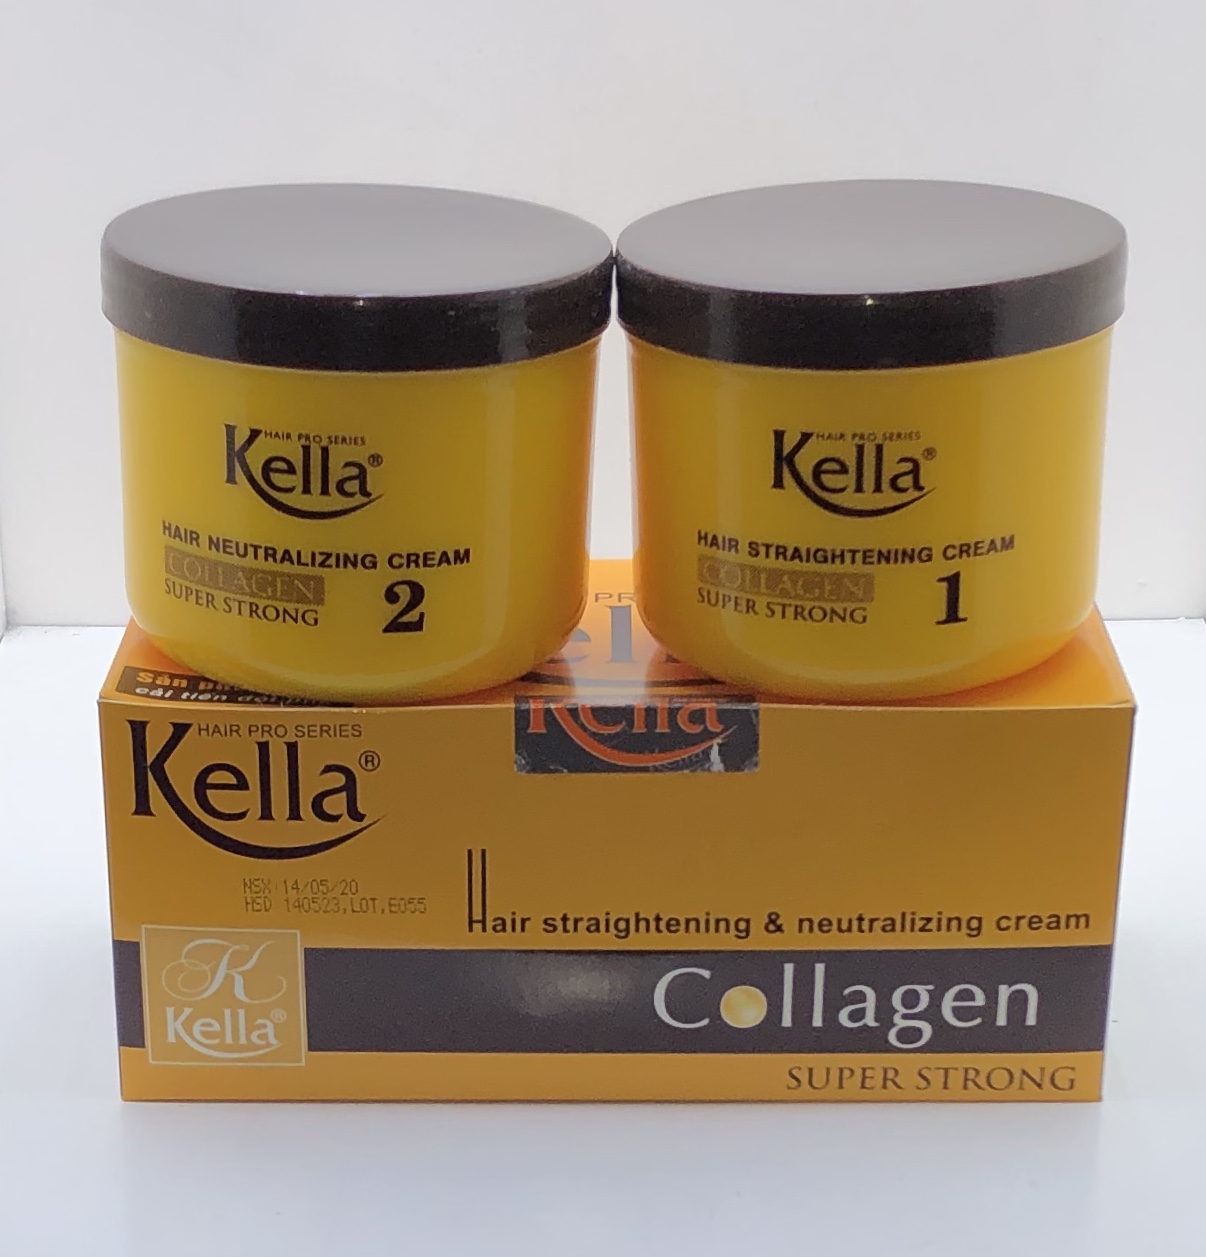 Măng cầu và collagen là hai thành phần chính của thuốc duỗi tóc Kella Collagen Super Strong. Khám phá cách sản phẩm này giúp bạn có được mái tóc thật thẳng, mềm mỏng và chắc khỏe như phong cách của người Nhật. Hãy xem hình ảnh để chứng kiến sự khác biệt của tóc bạn!